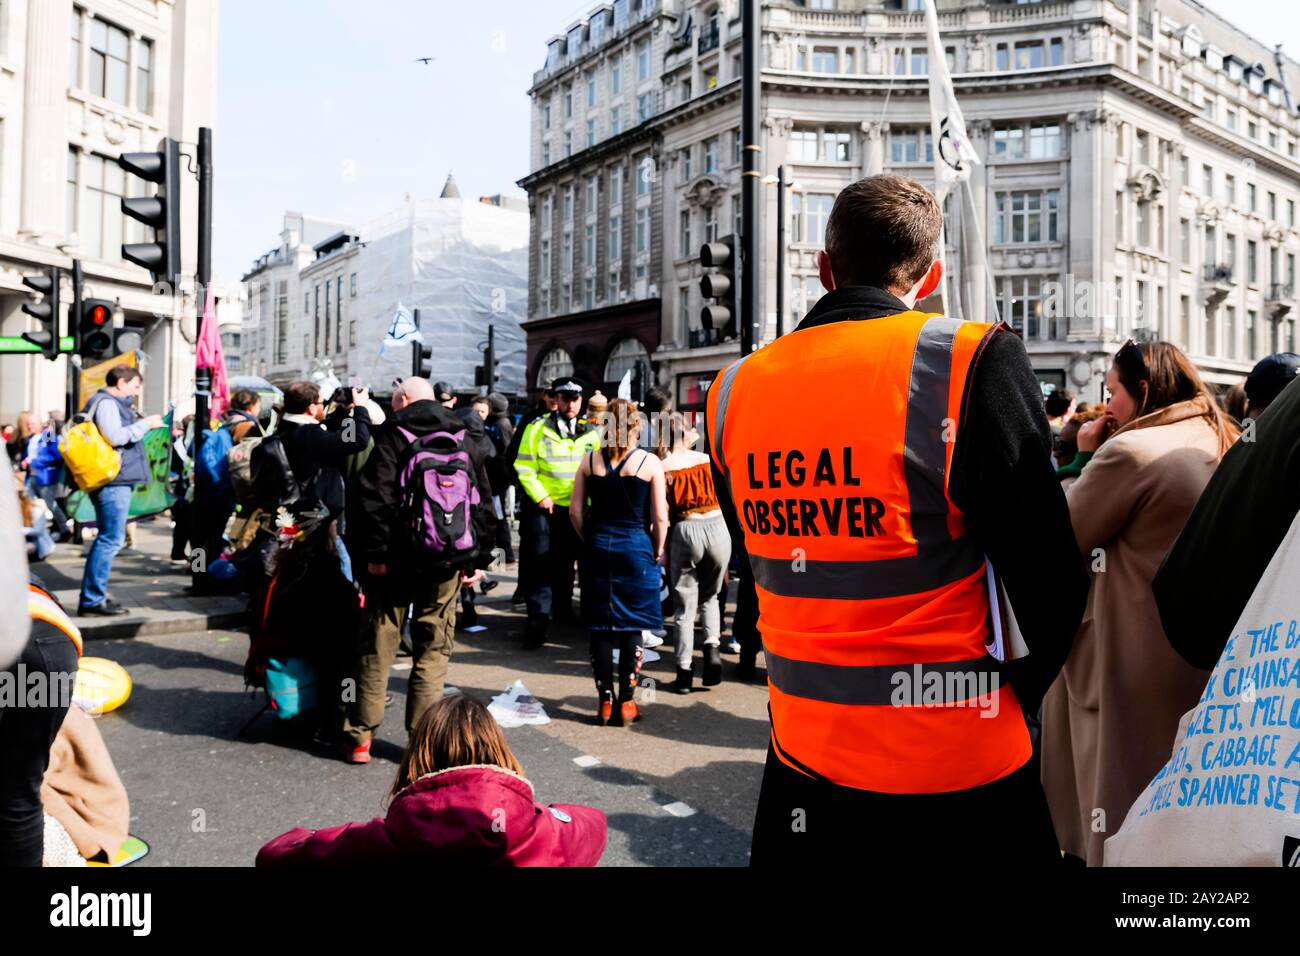 Londra, Regno Unito. Un protestante con un tabardo arancione con scritto 'Legal Protester' guarda ad una protesta contro Oxford Circus. Londra si ferma così Foto Stock